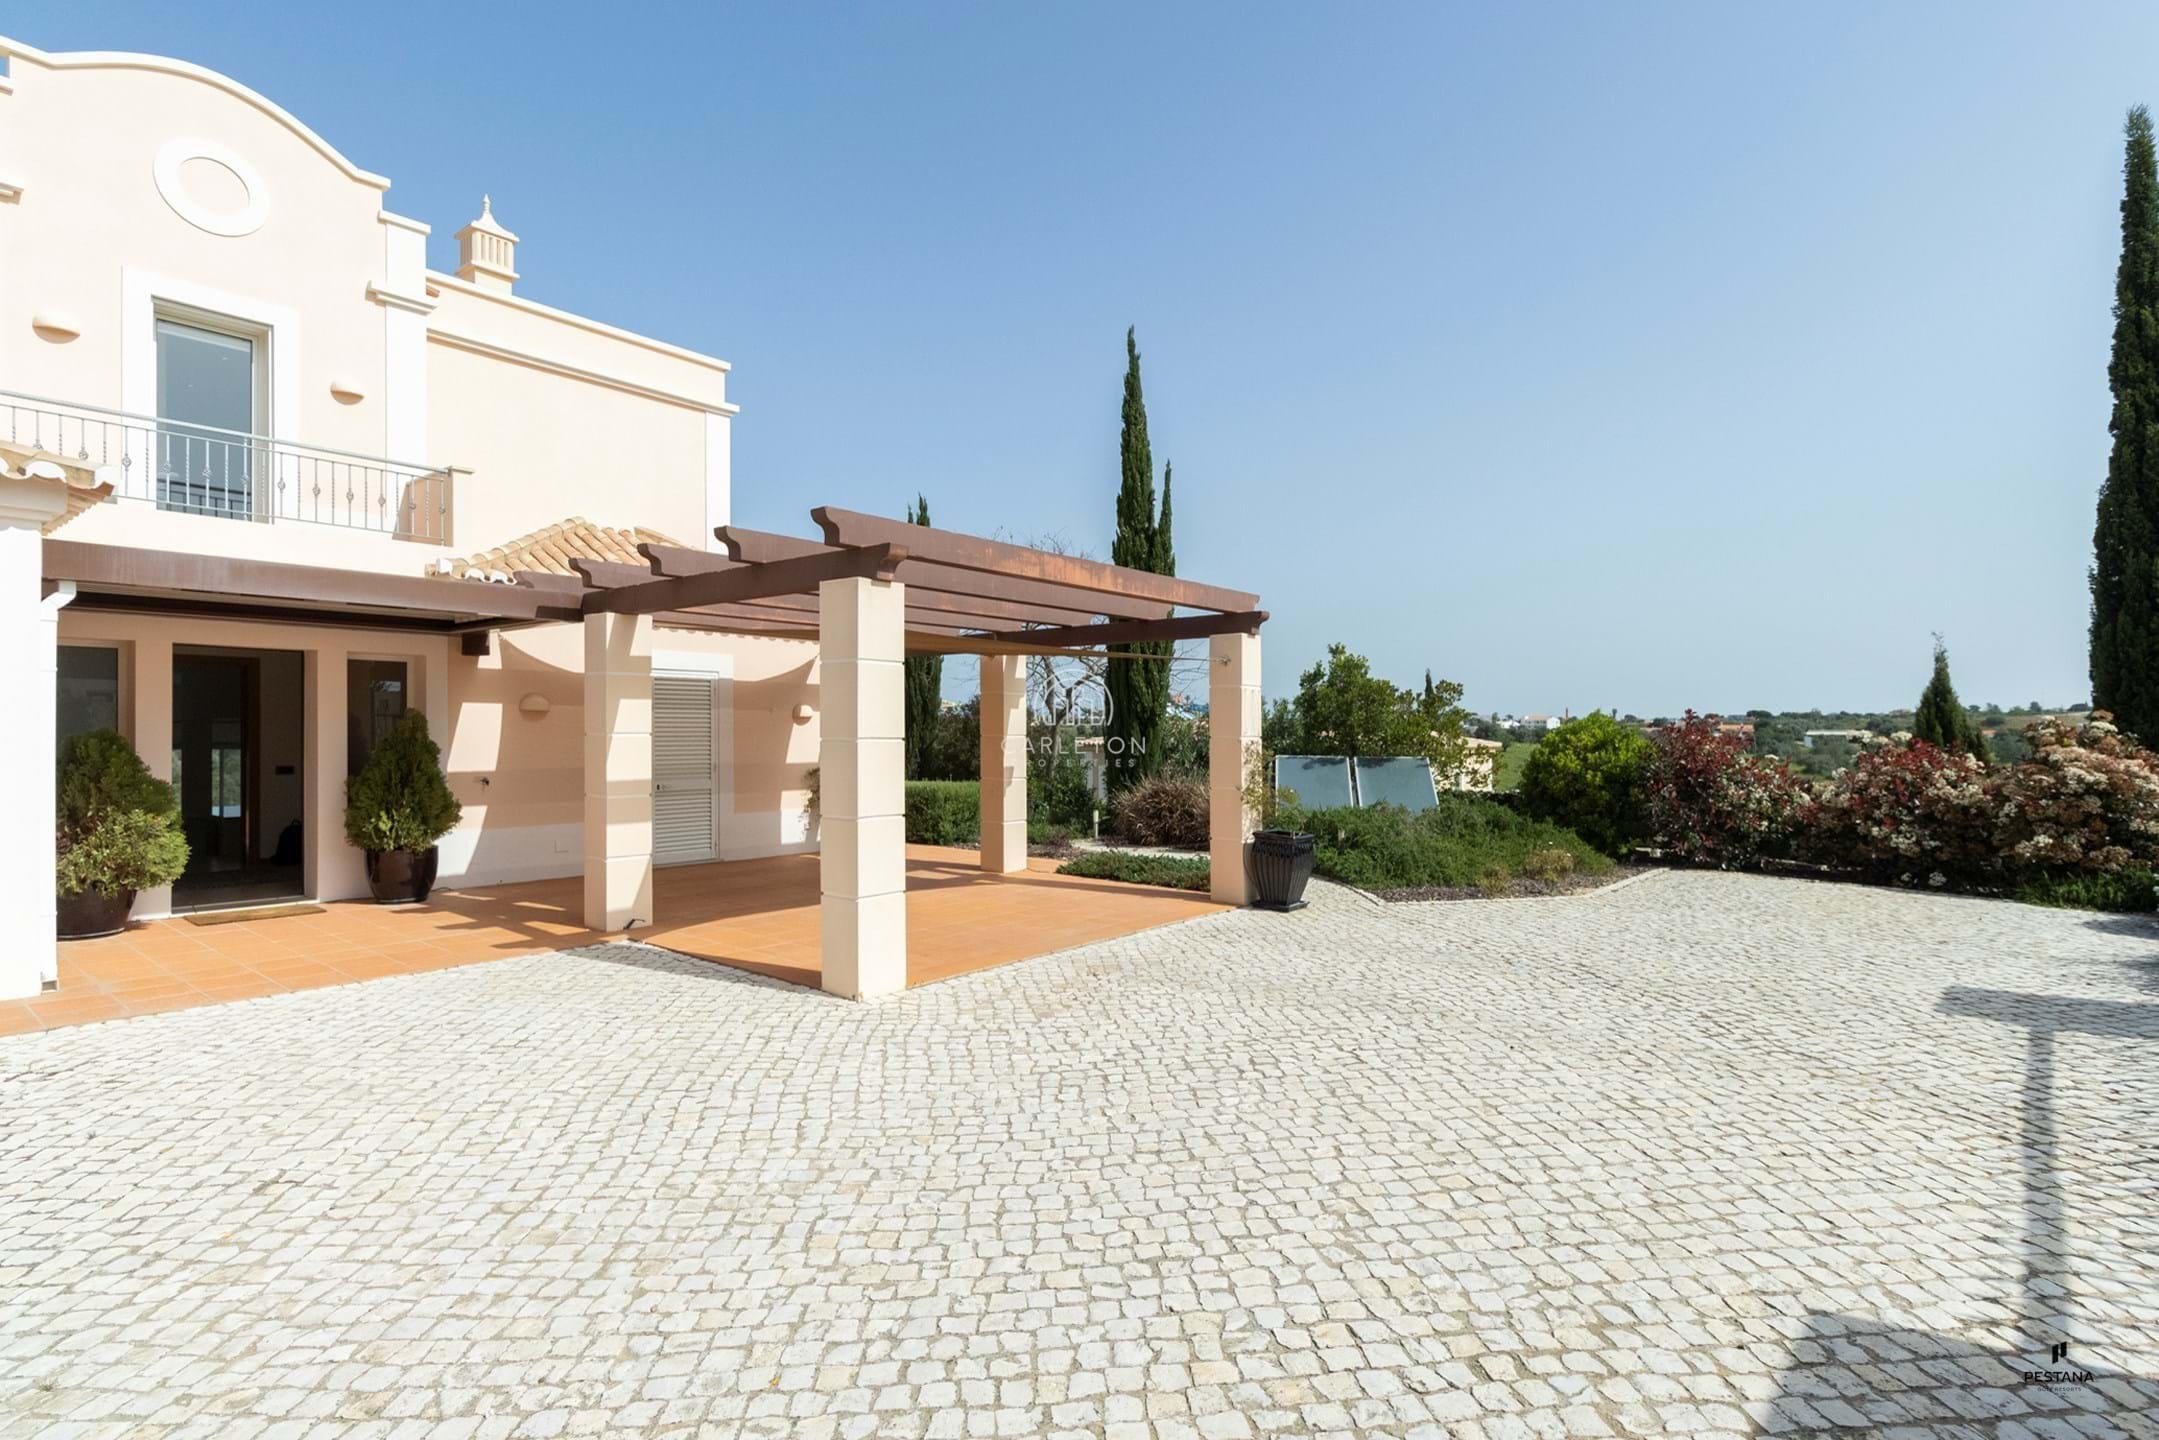 3 - bedroom villa with swimming pool in Vale da Pinta Golf Resort - Algarve